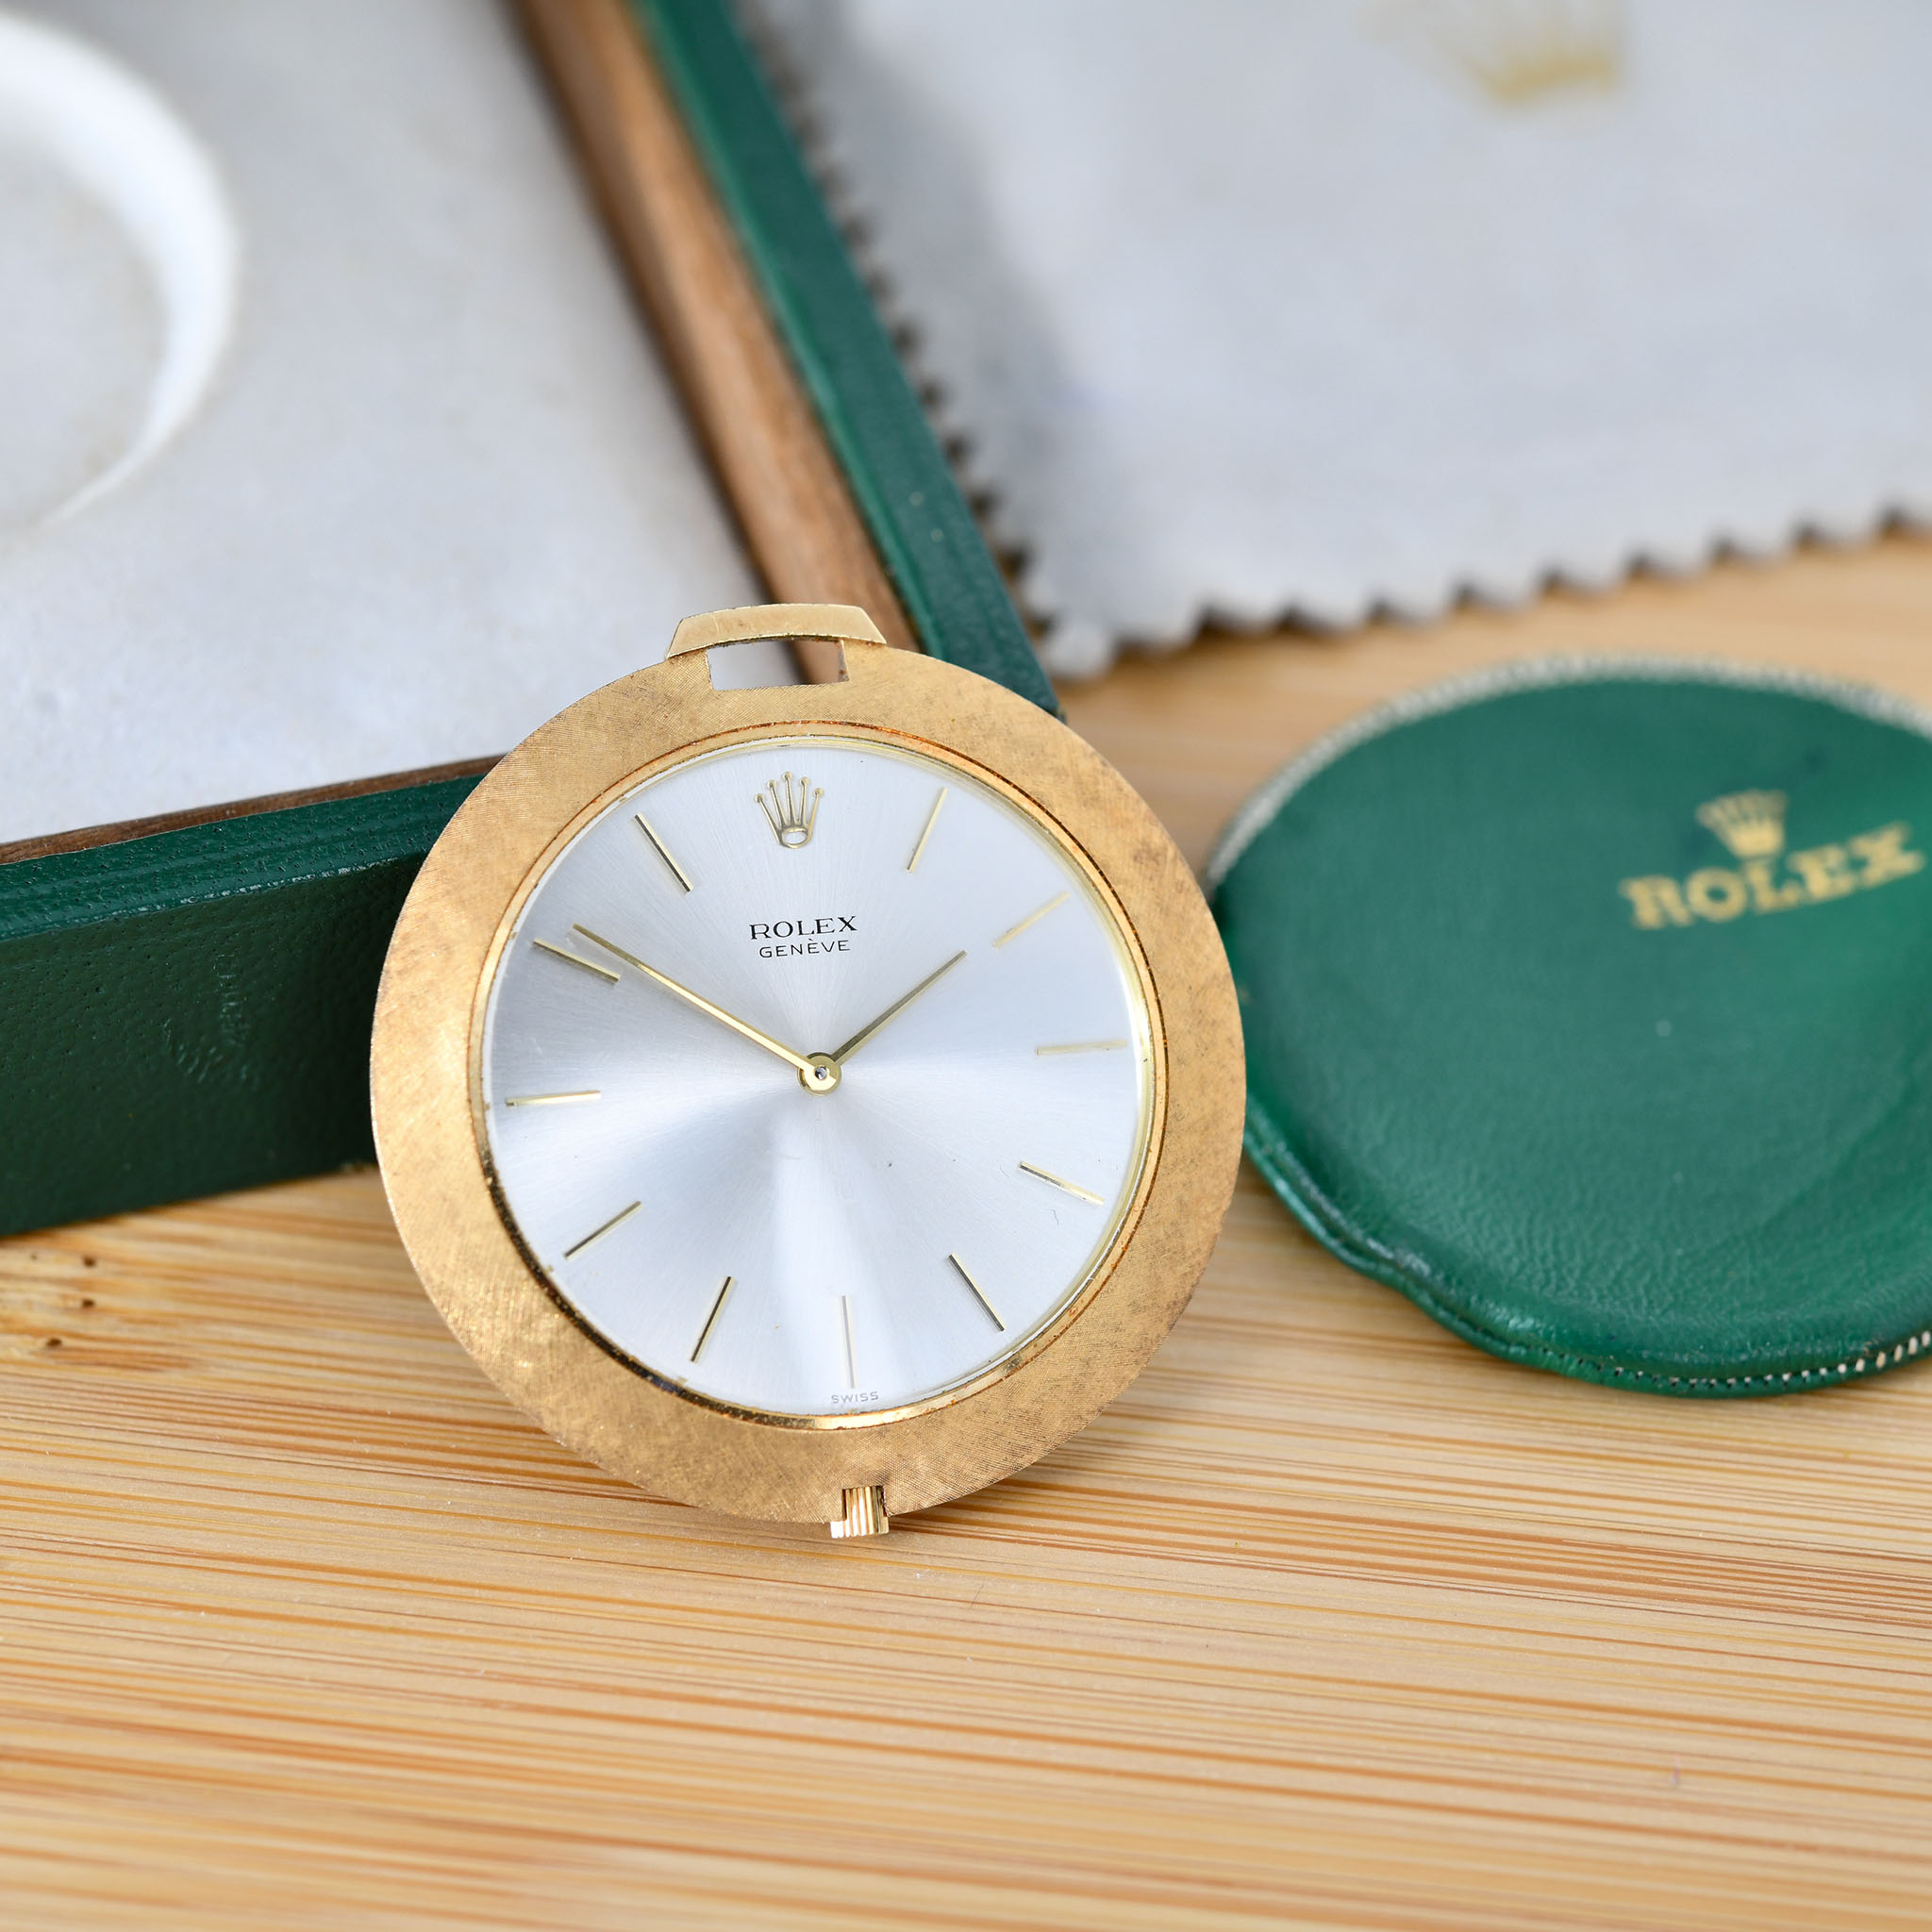 Rolex-Cellini-Pocket-watch-img-main6